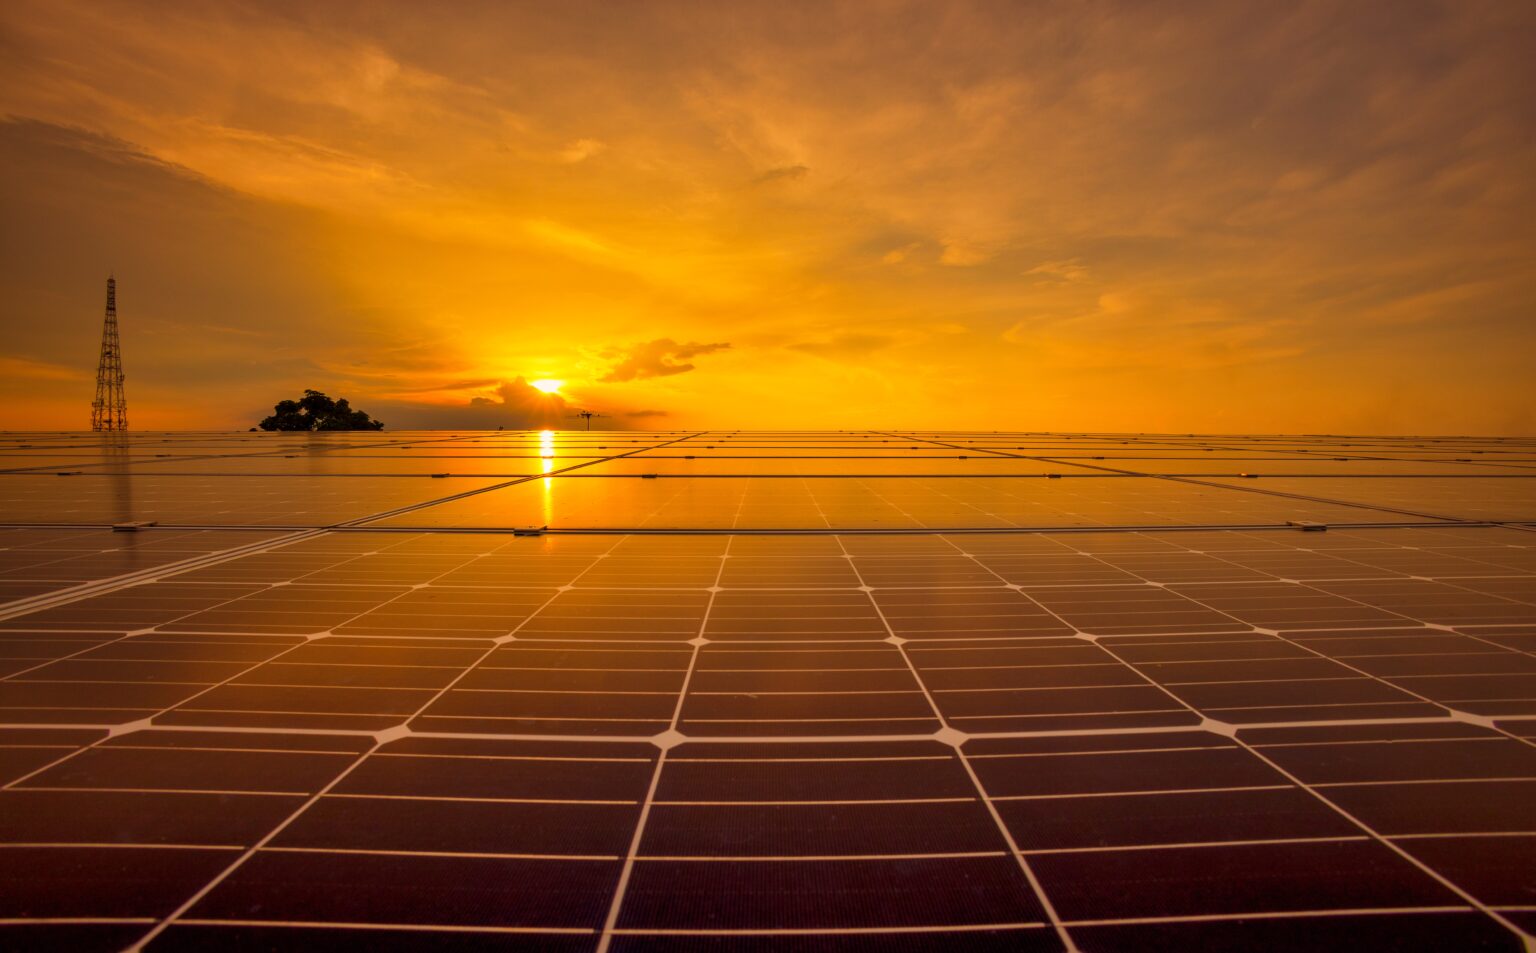 Solarzellen vor einem Sonnenuntergang